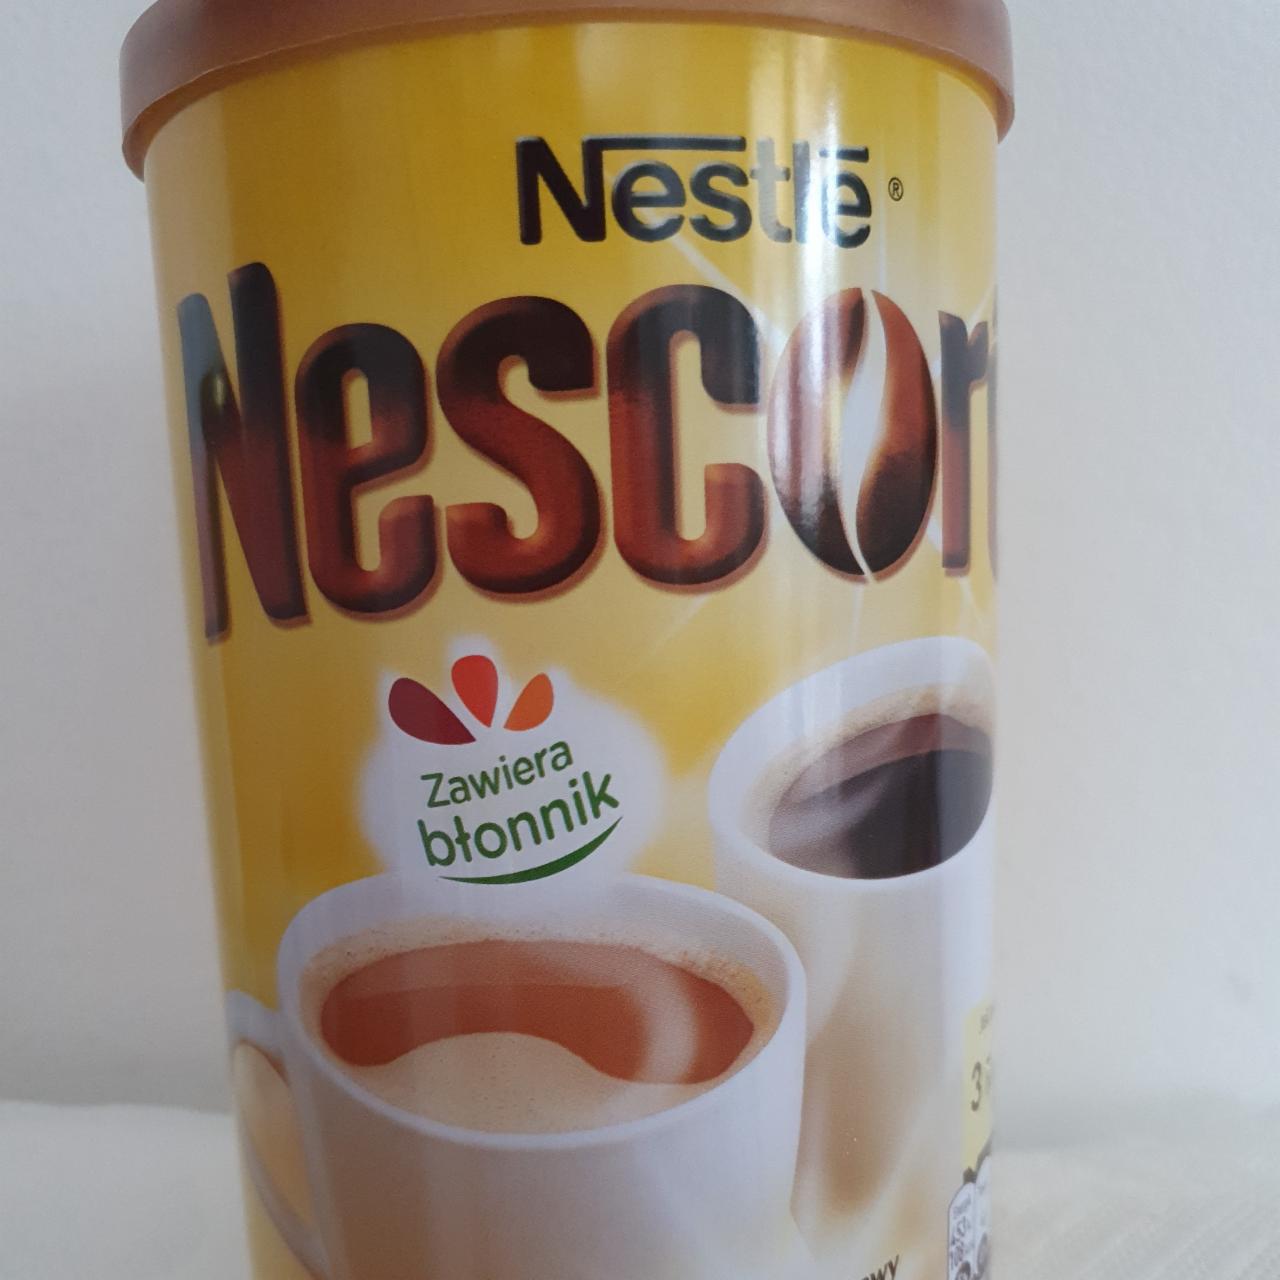 Fotografie - Nescoré Nestlé